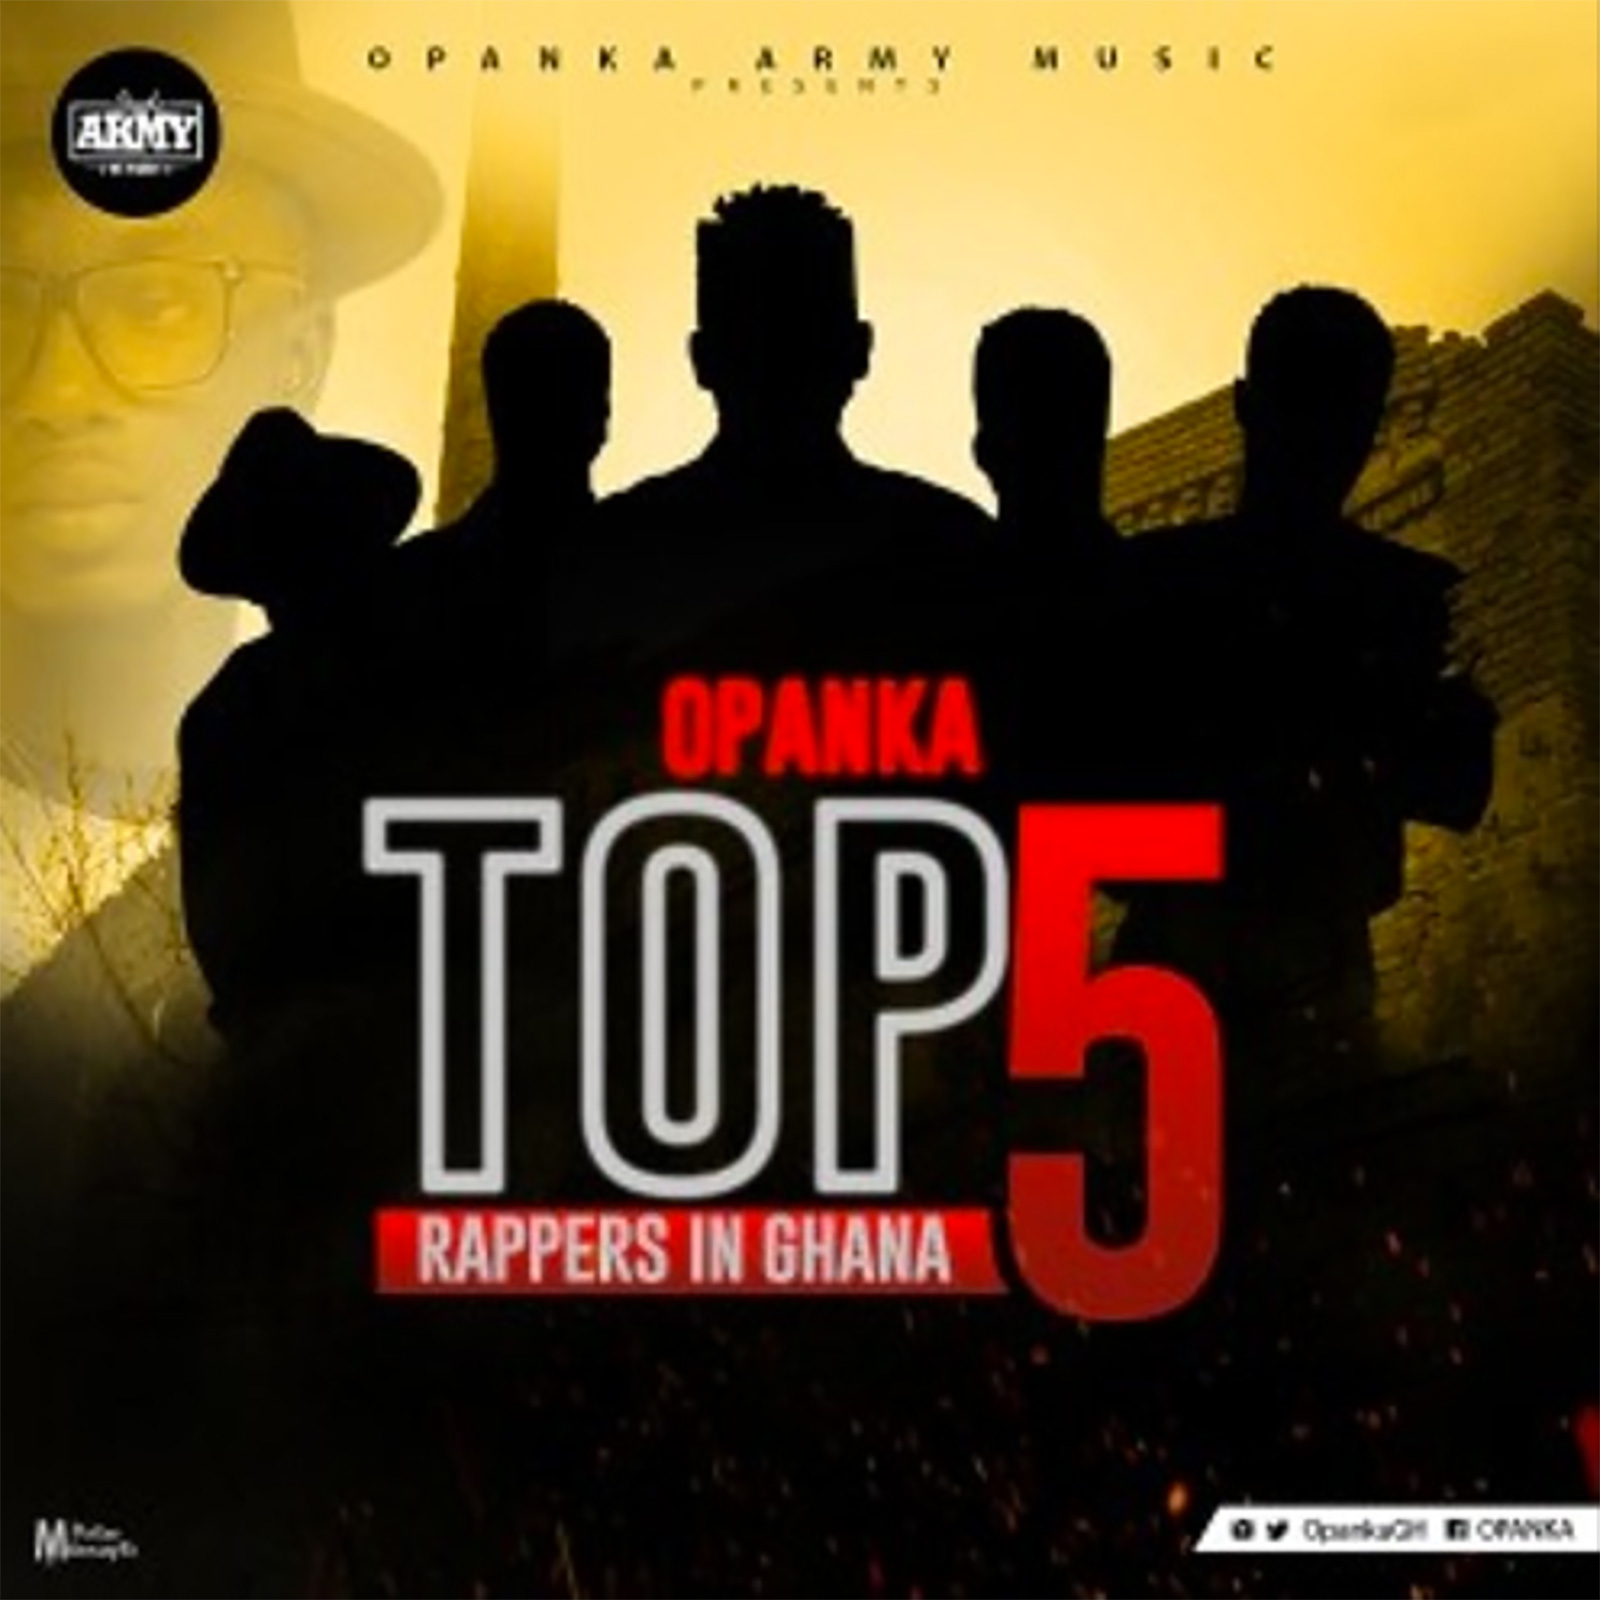 Top 5 Rappers In Ghana by Opanka